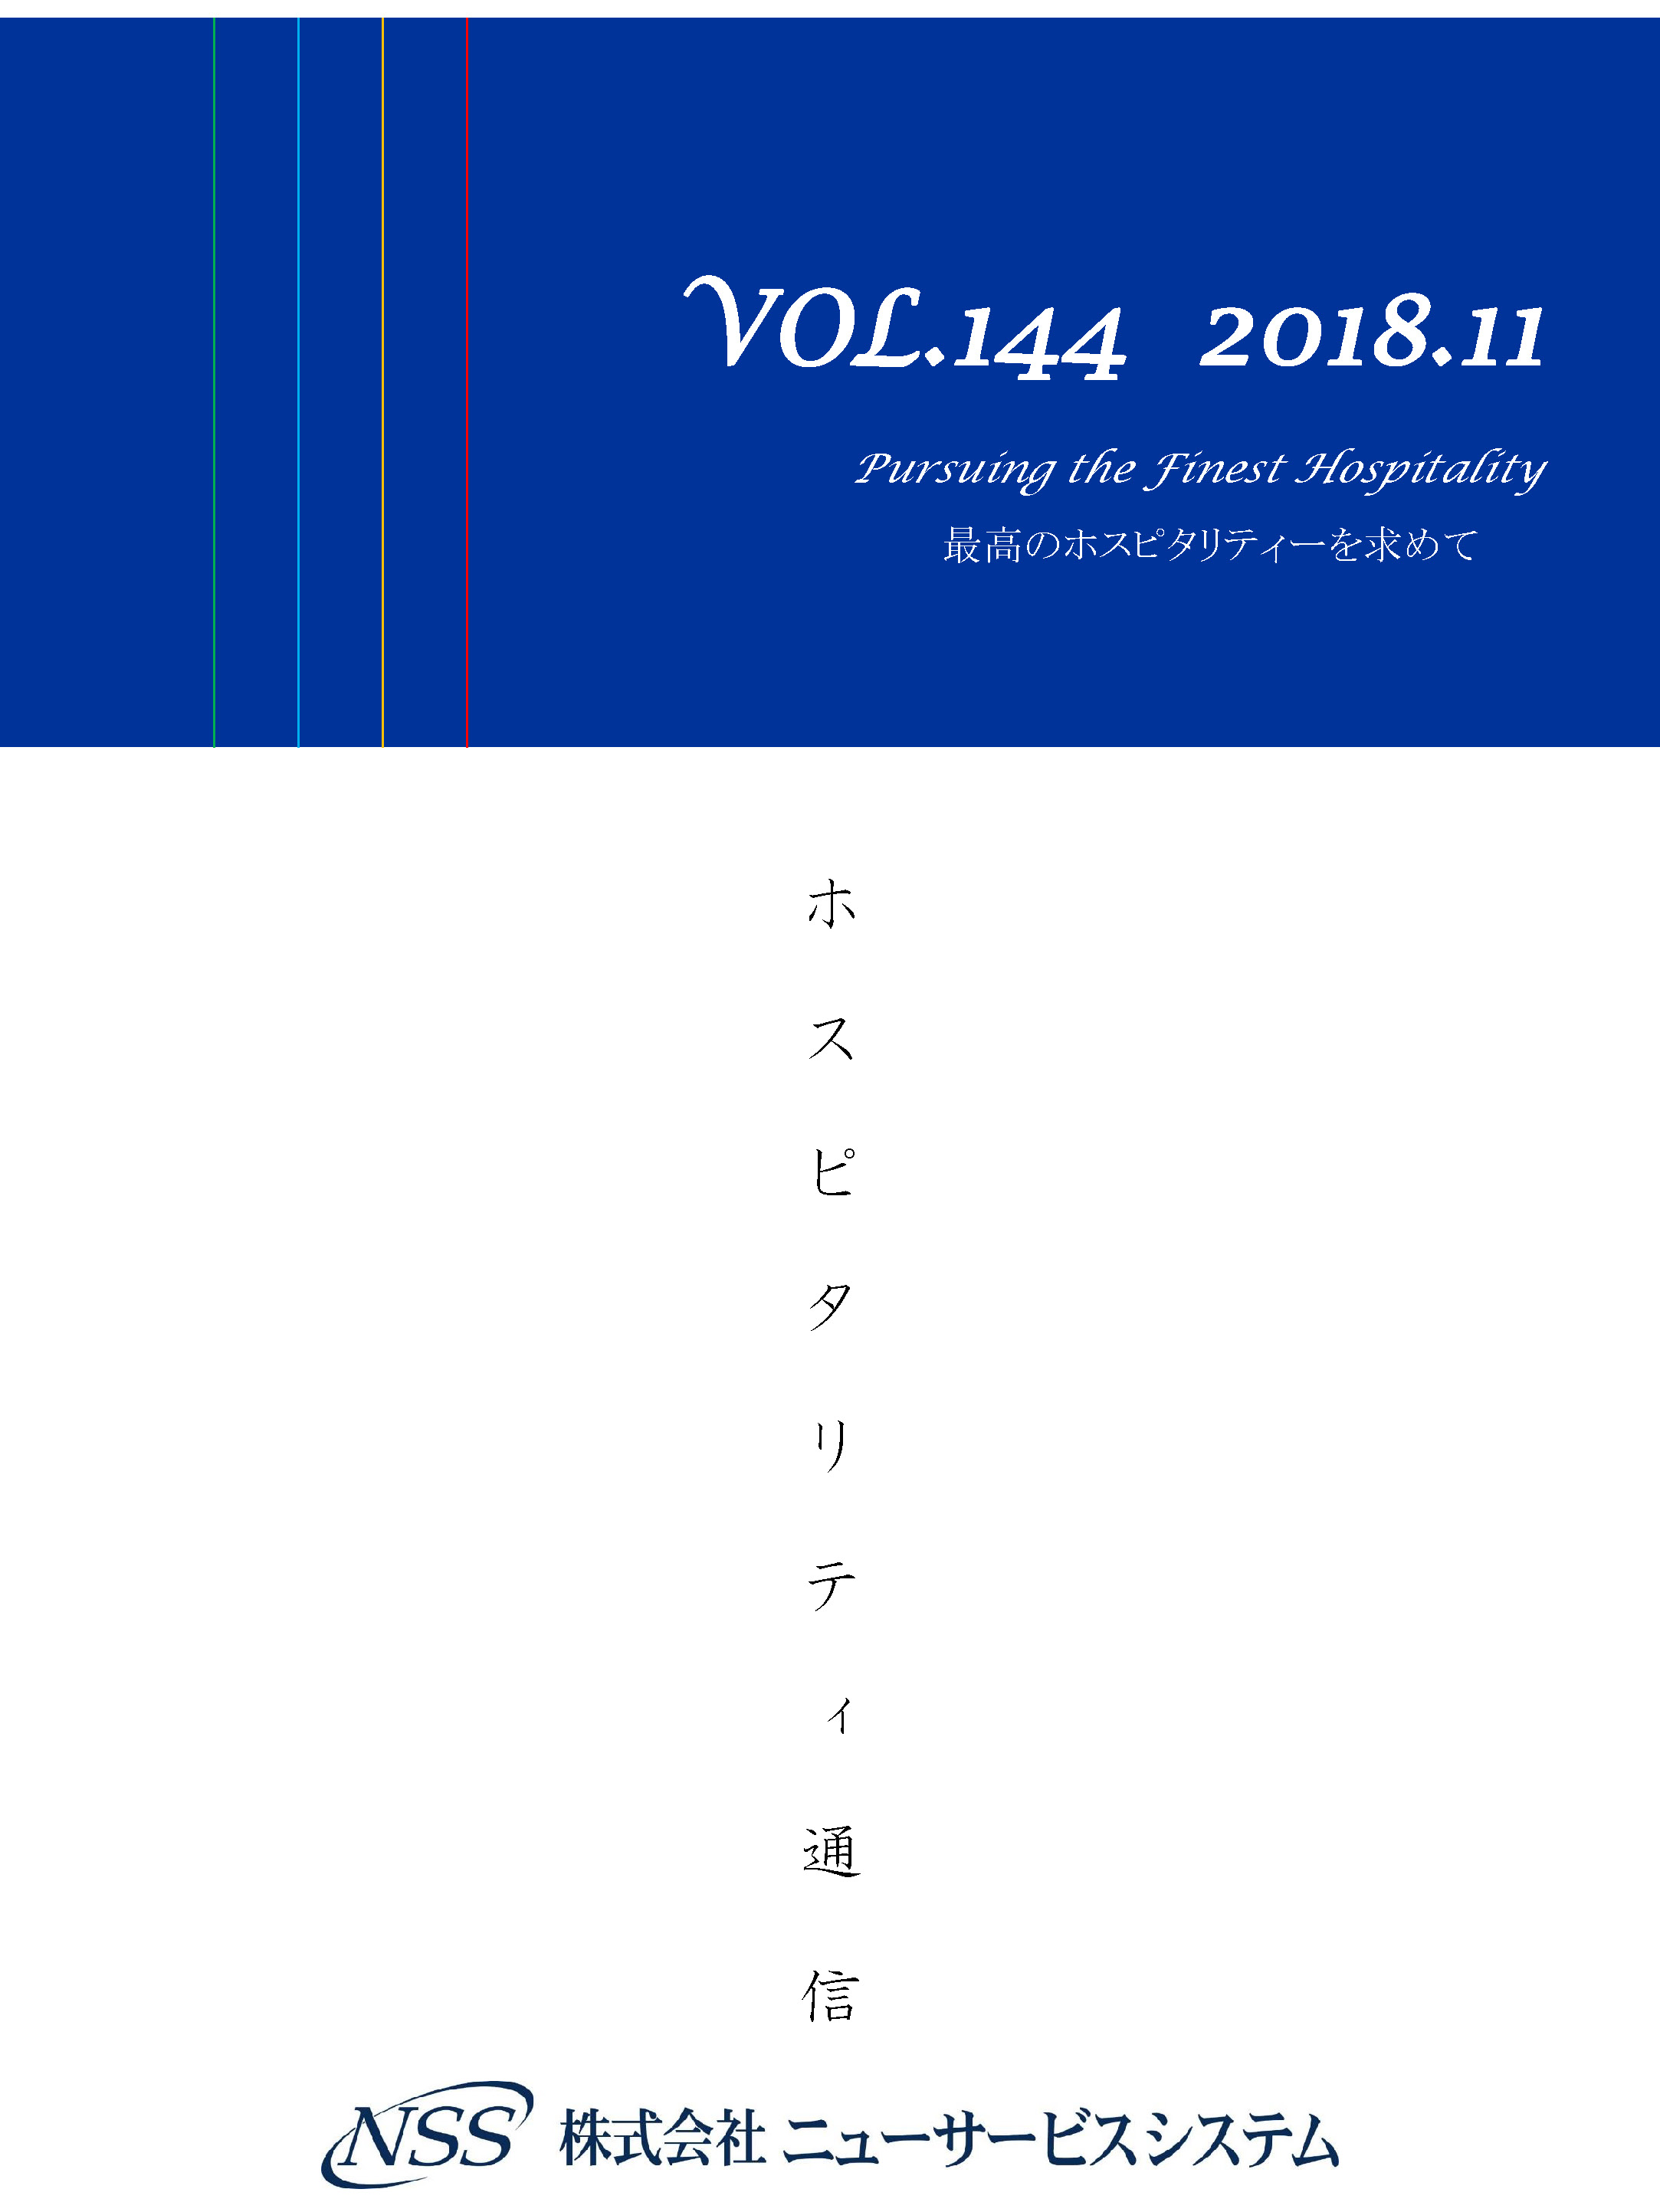 ホスピタリティ通信 vol.144